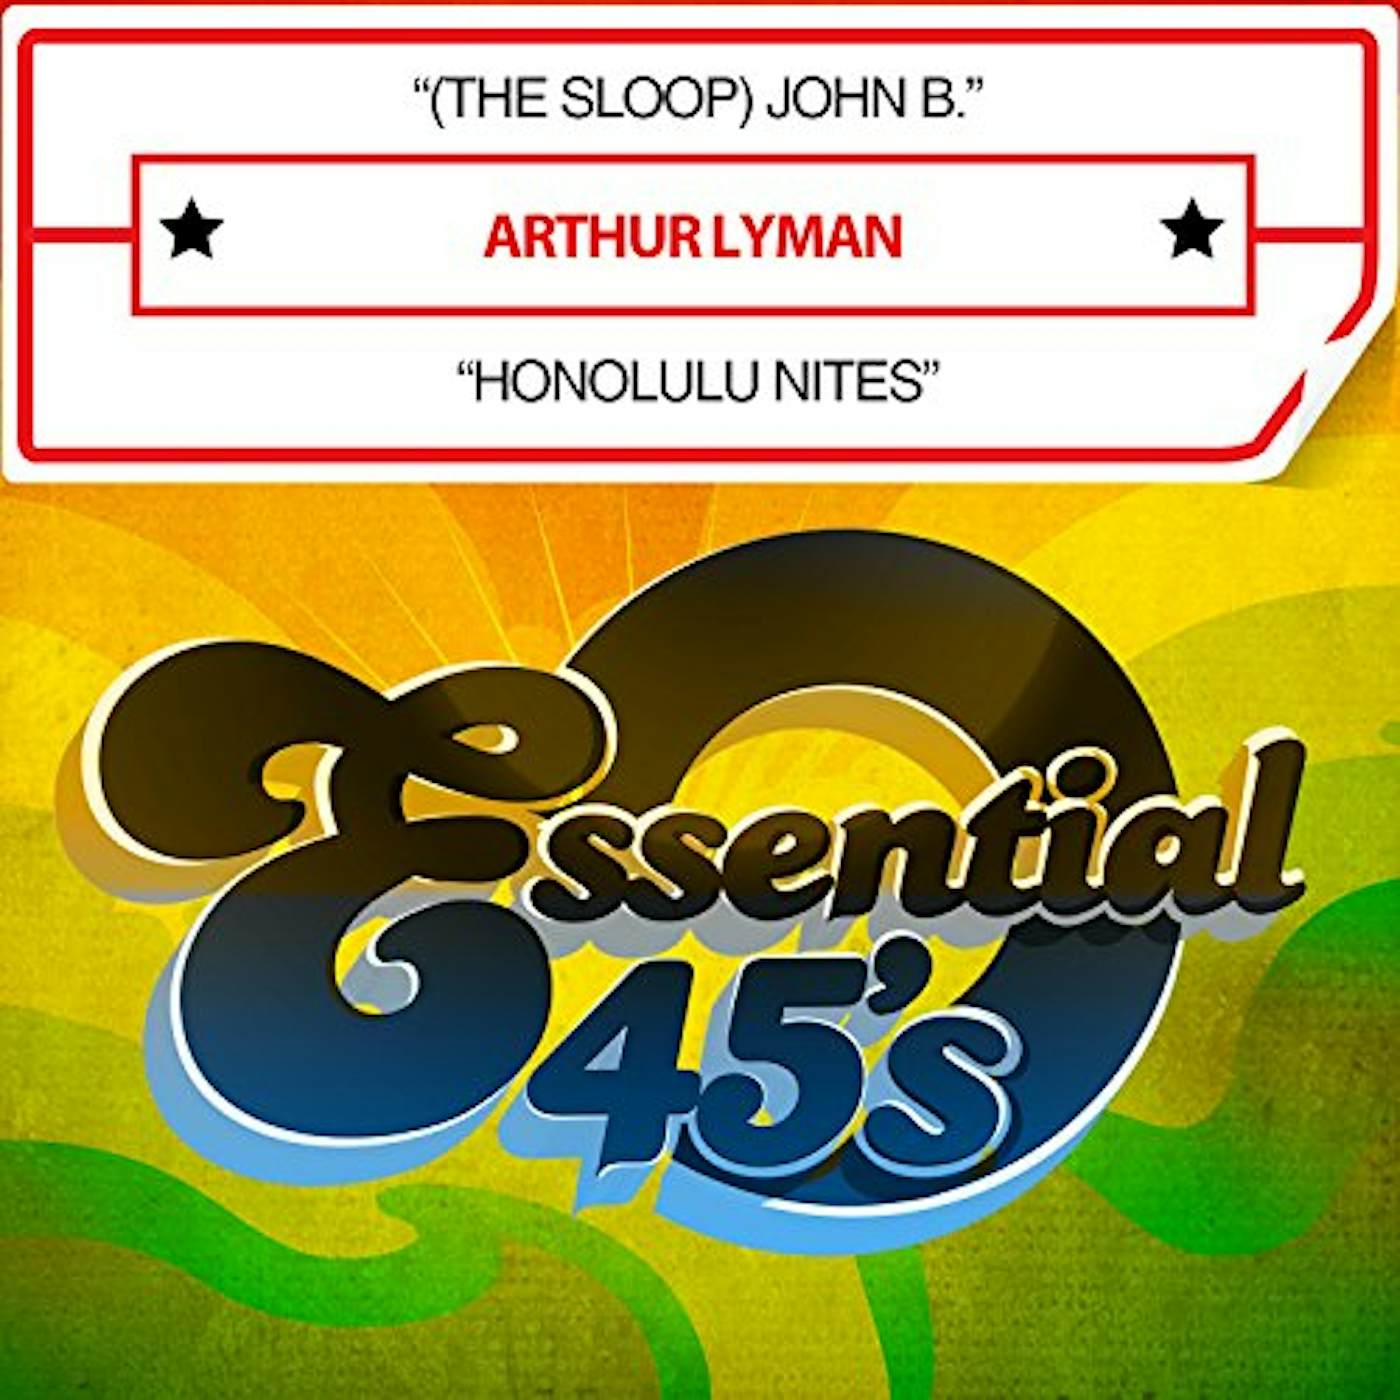 Arthur Lyman (THE SLOOP) JOHN B. / HONOLULU NITES CD